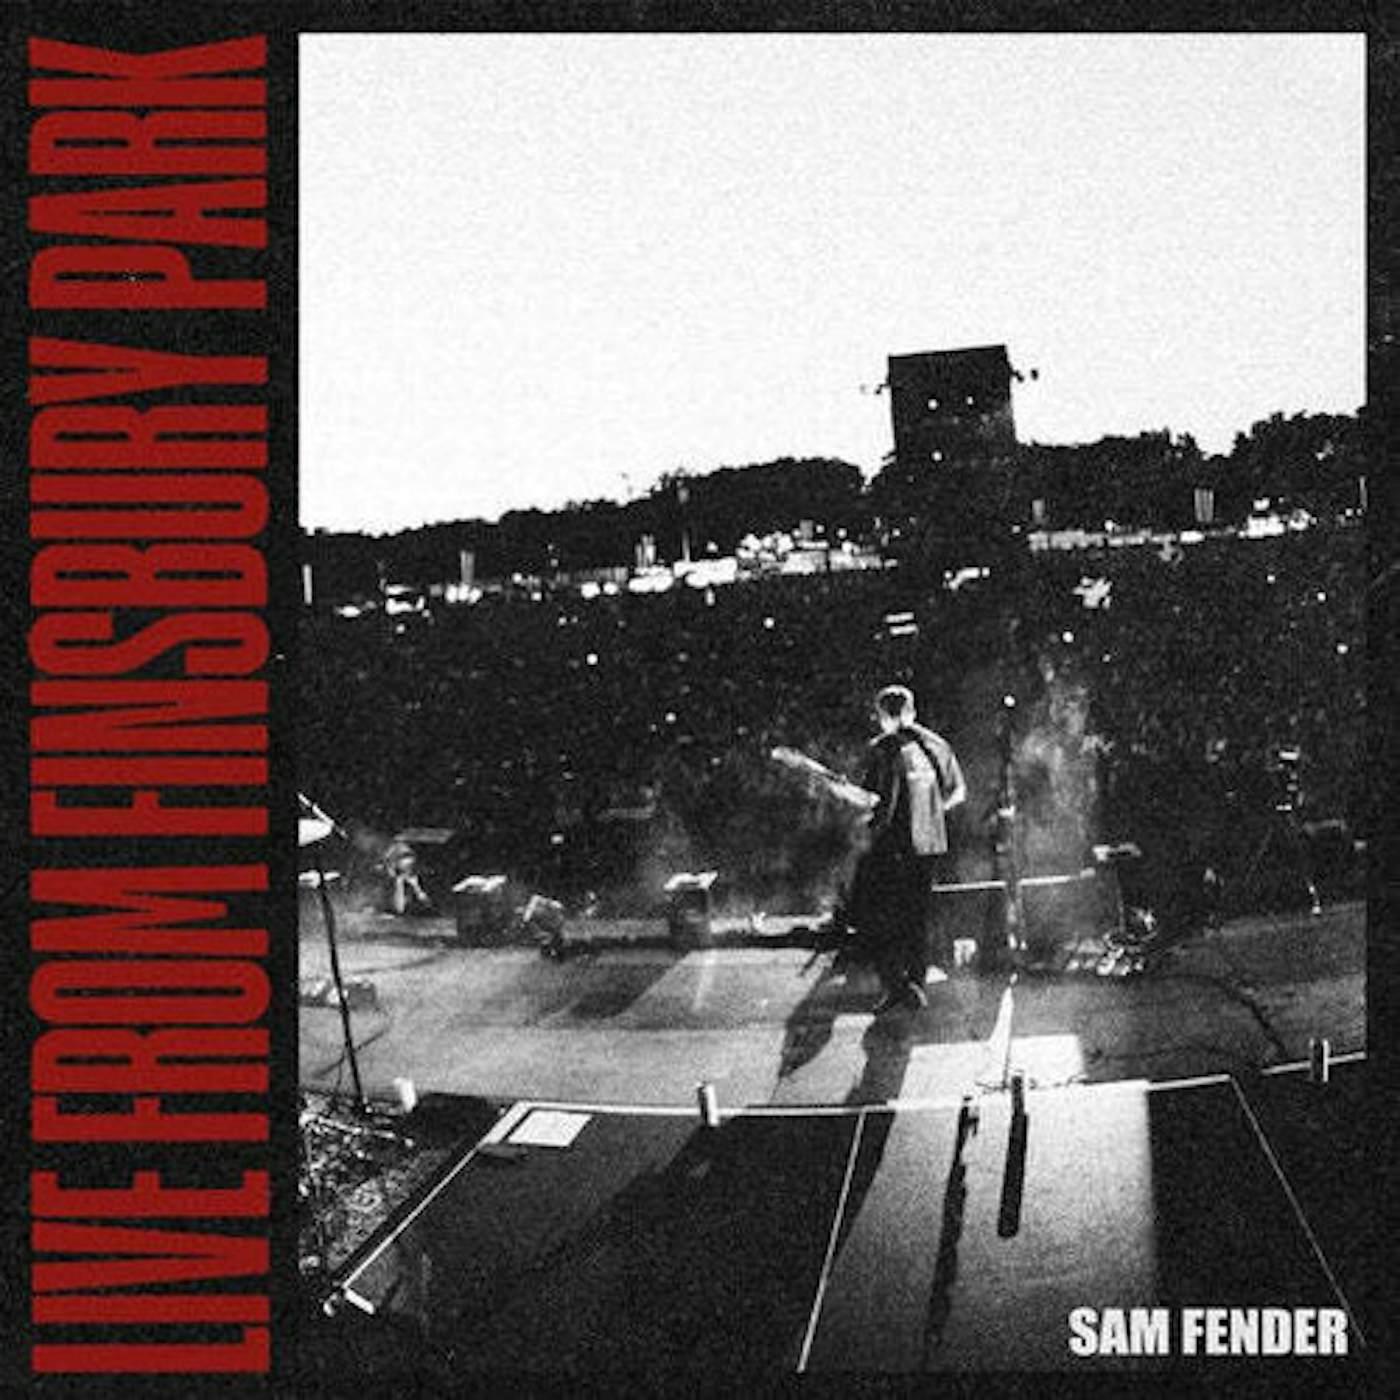 Sam Fender Live From Finsbury Park Vinyl Record